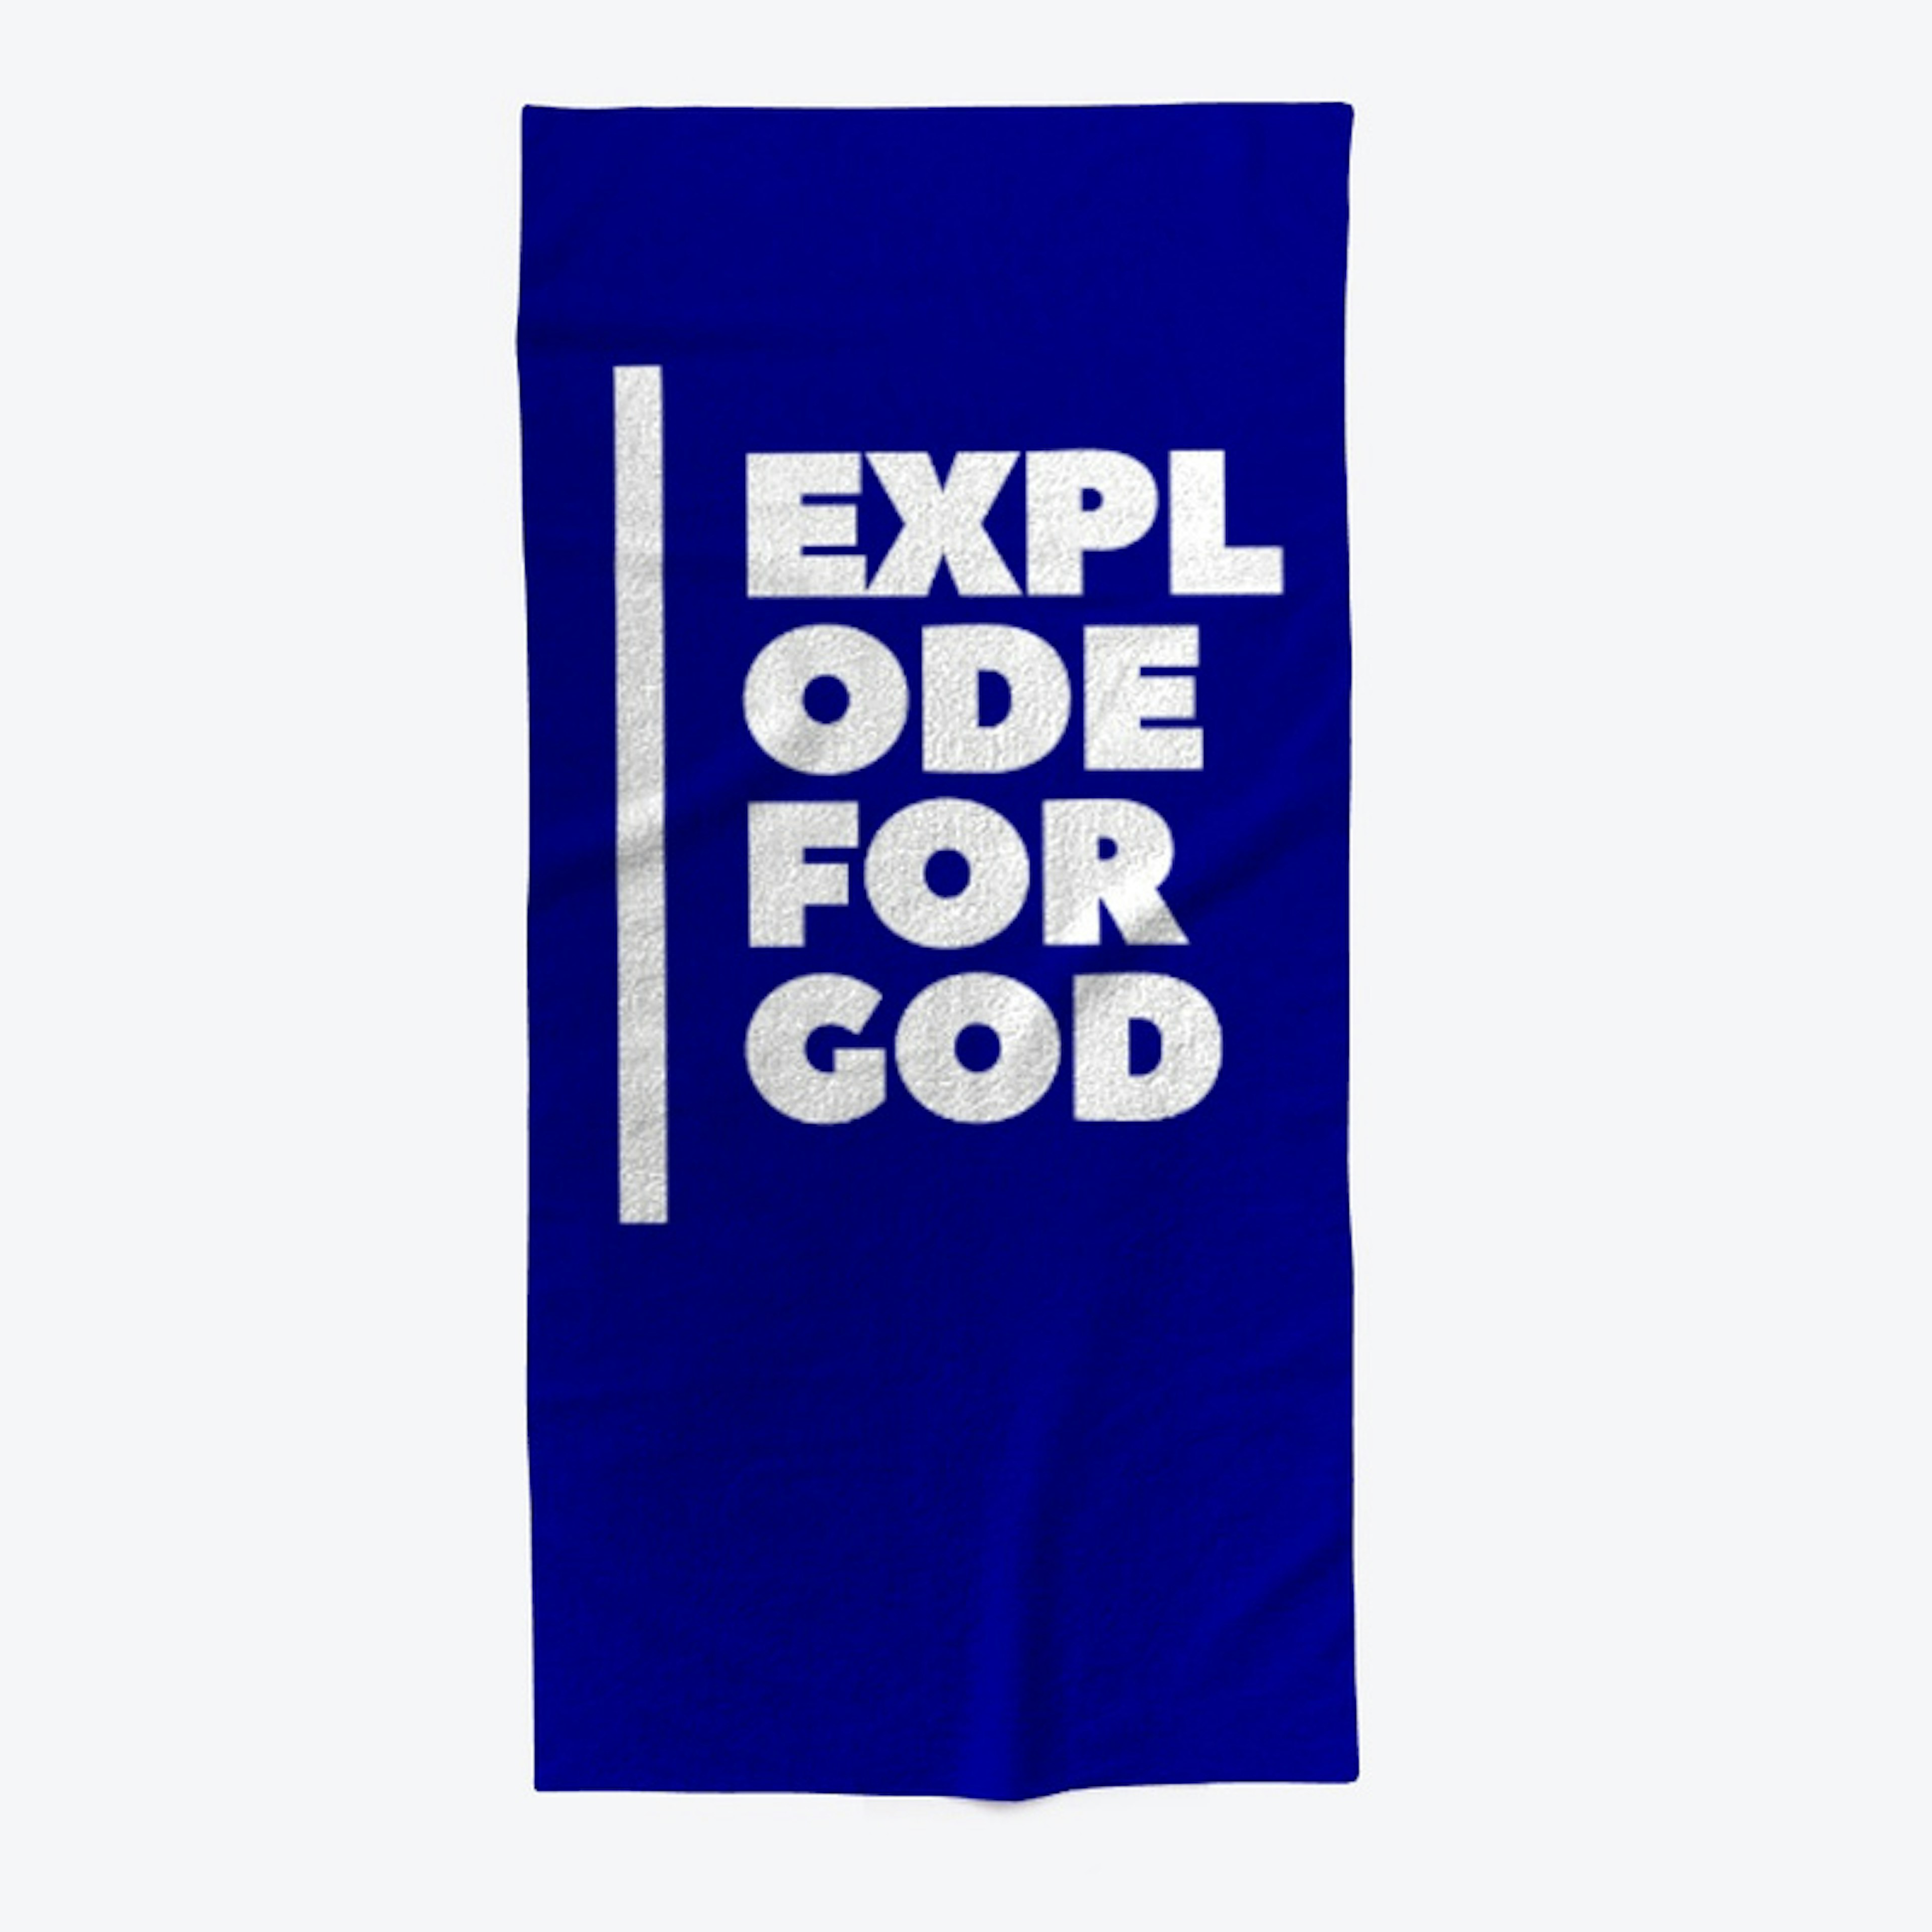 Explode for God